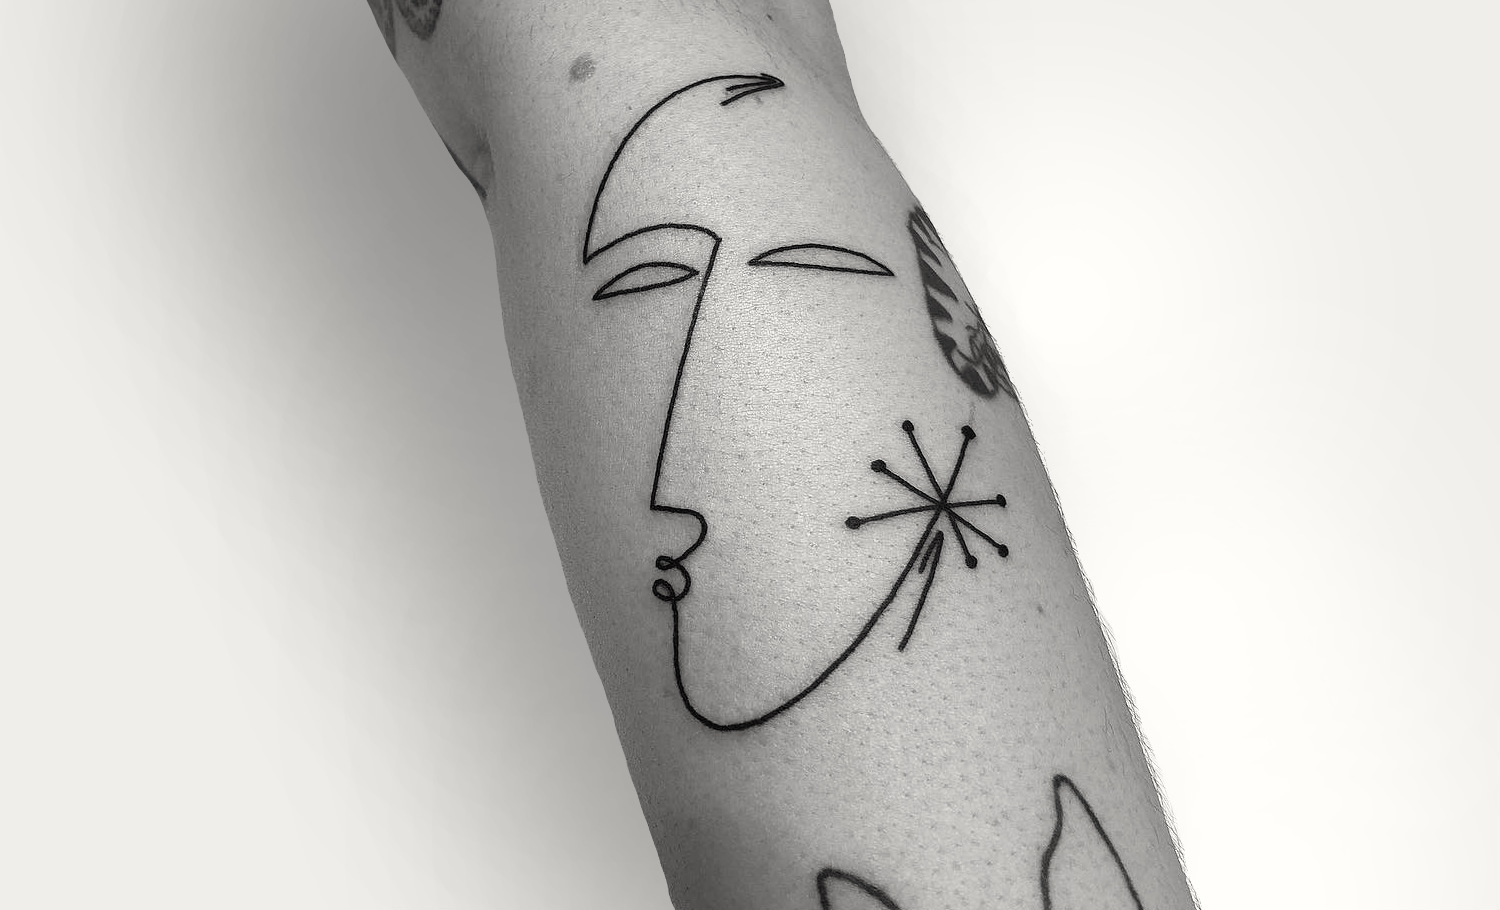 Single line tattoo by Caleb Kilby